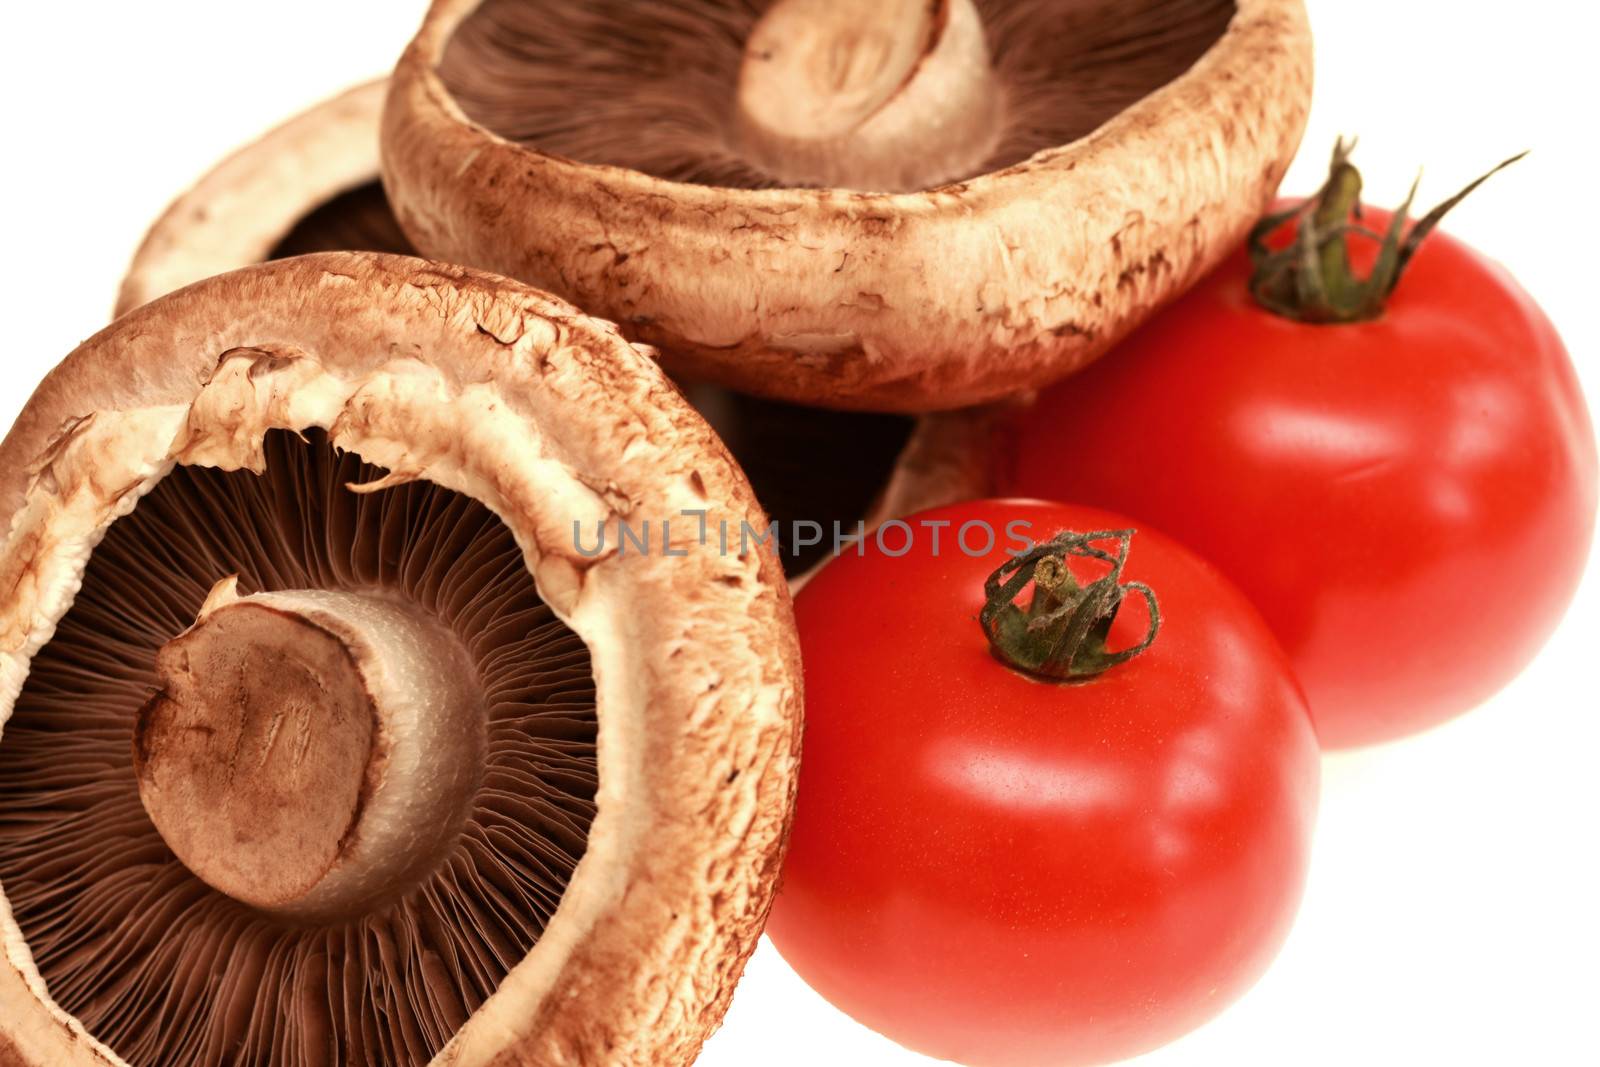 Mushroom and Tomatoes